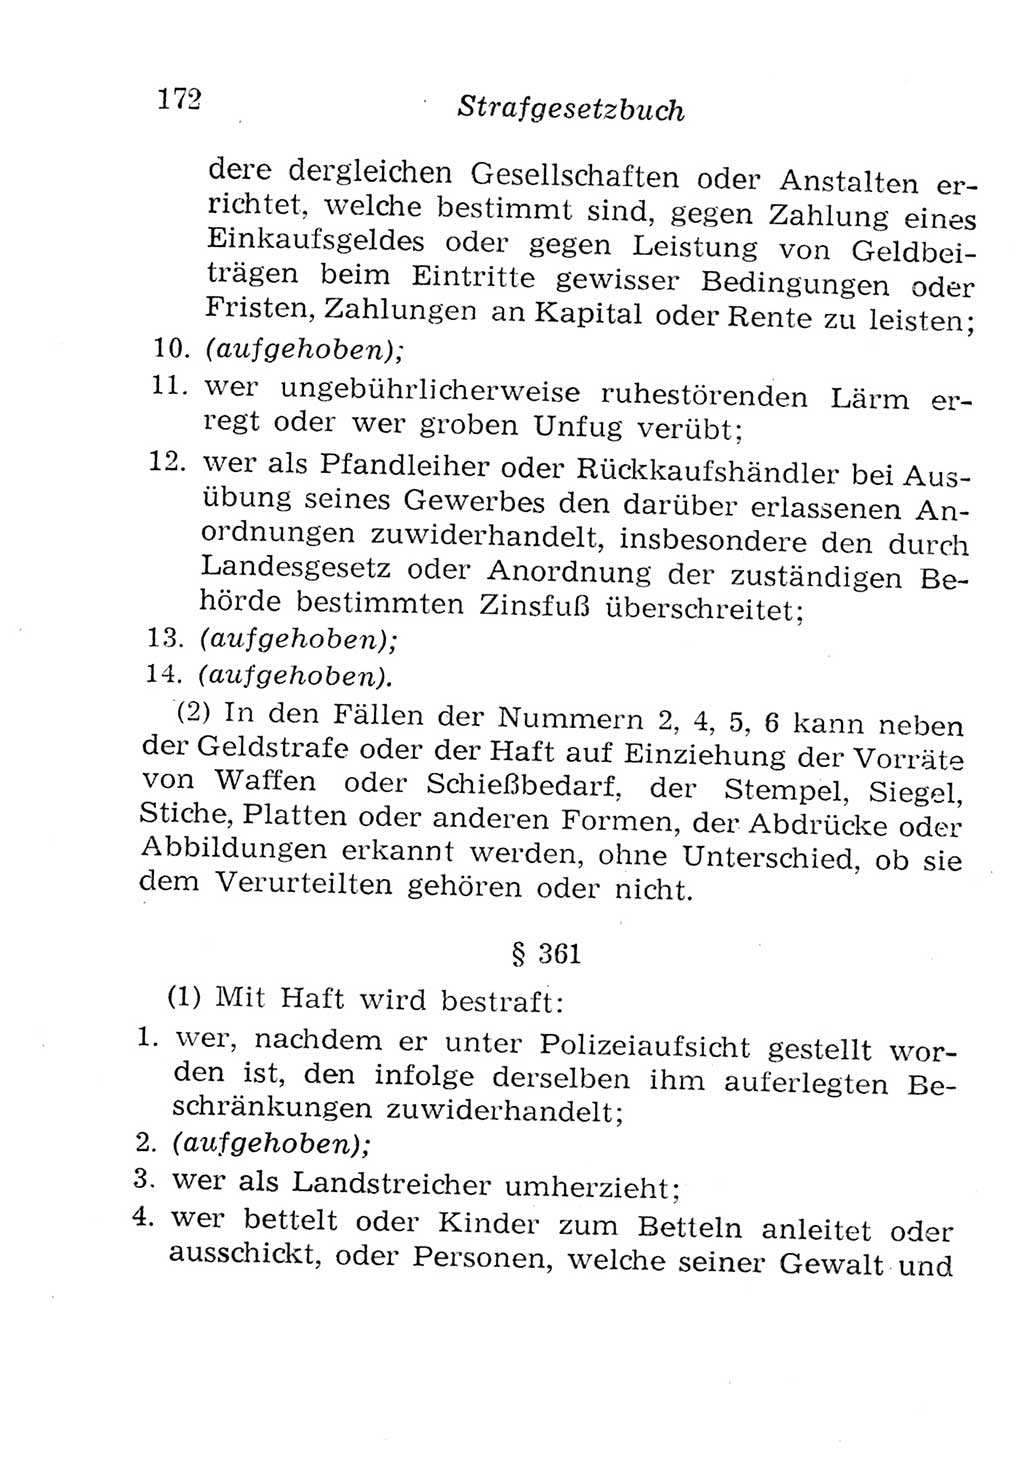 Strafgesetzbuch (StGB) und andere Strafgesetze [Deutsche Demokratische Republik (DDR)] 1957, Seite 172 (StGB Strafges. DDR 1957, S. 172)